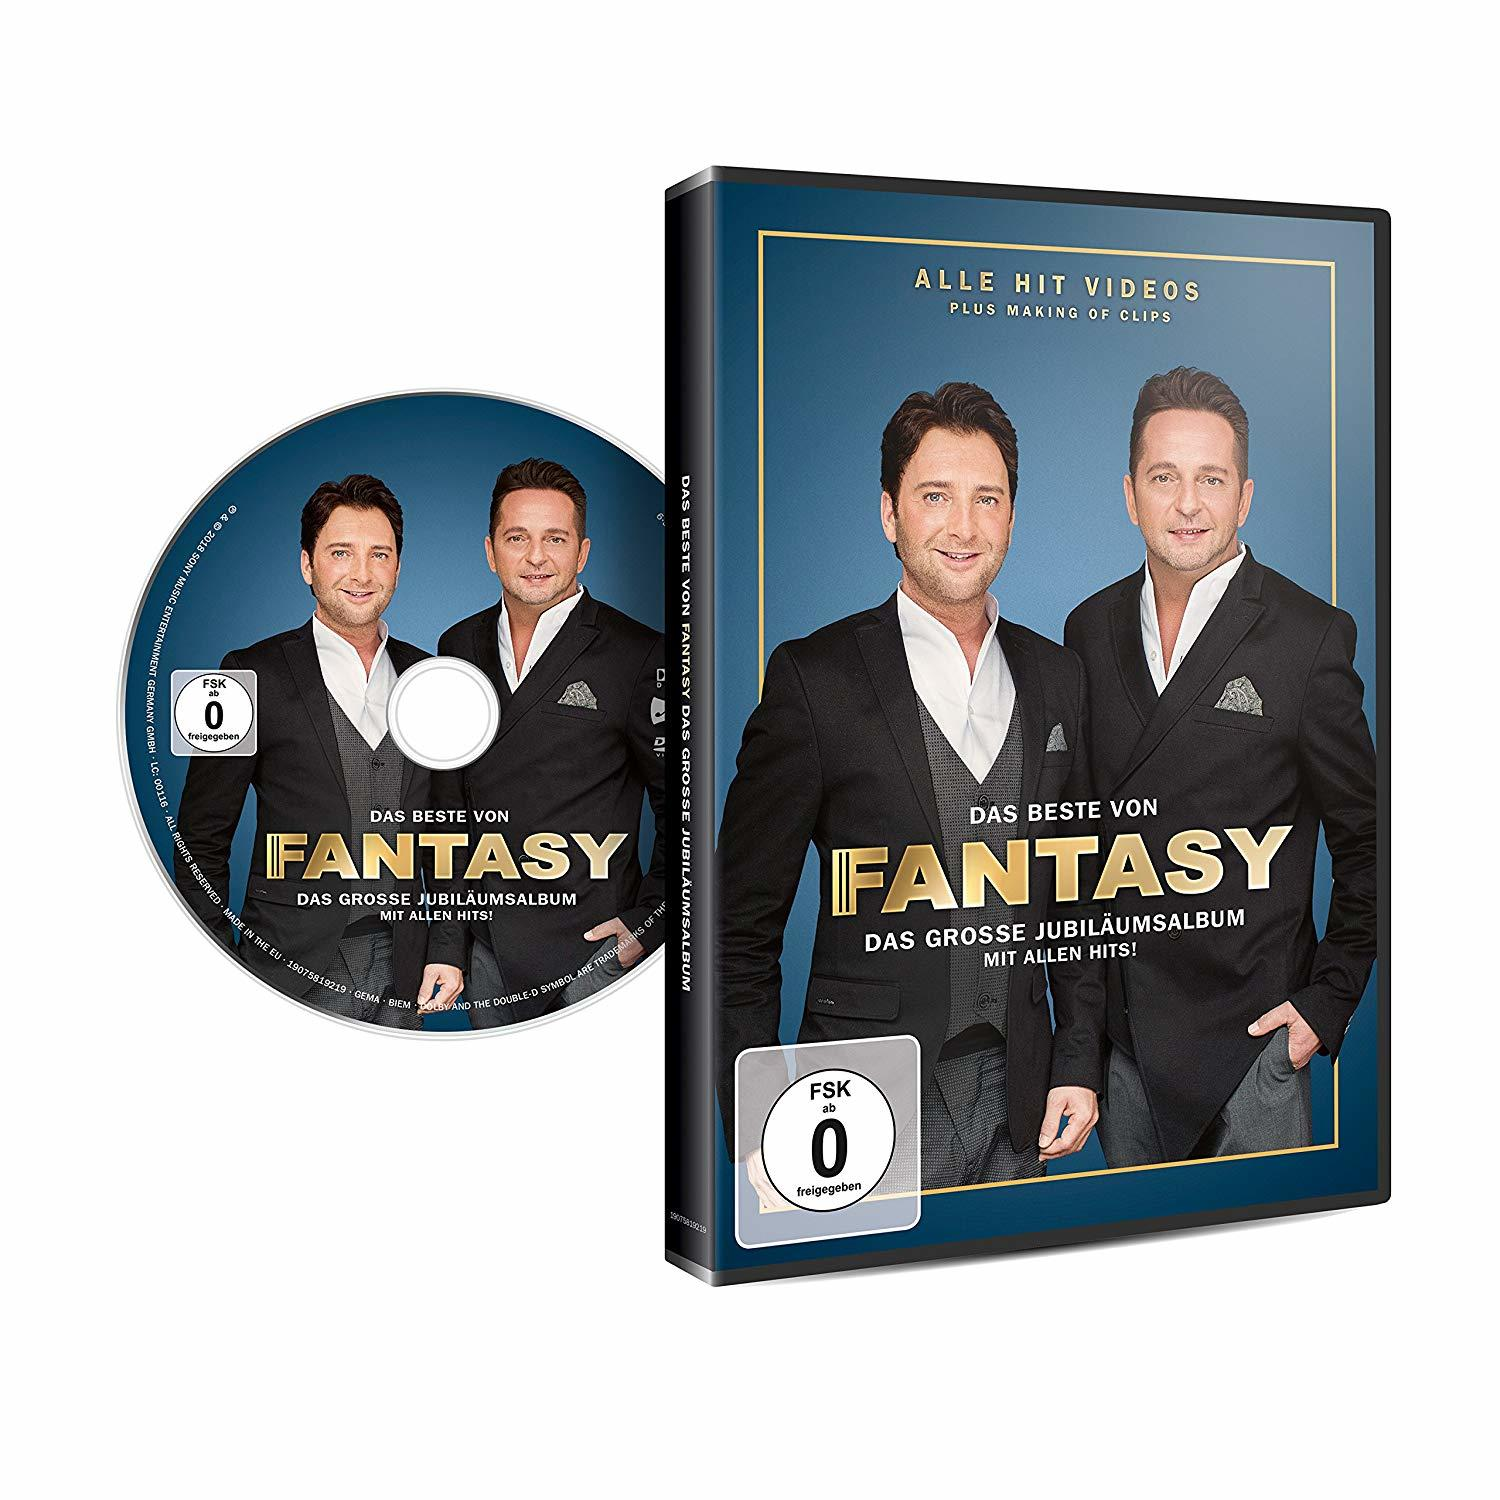 von Das Jubiläumsalbum Mit Beste allen - Das - Fantasy Hits! - große - Fantasy (DVD)